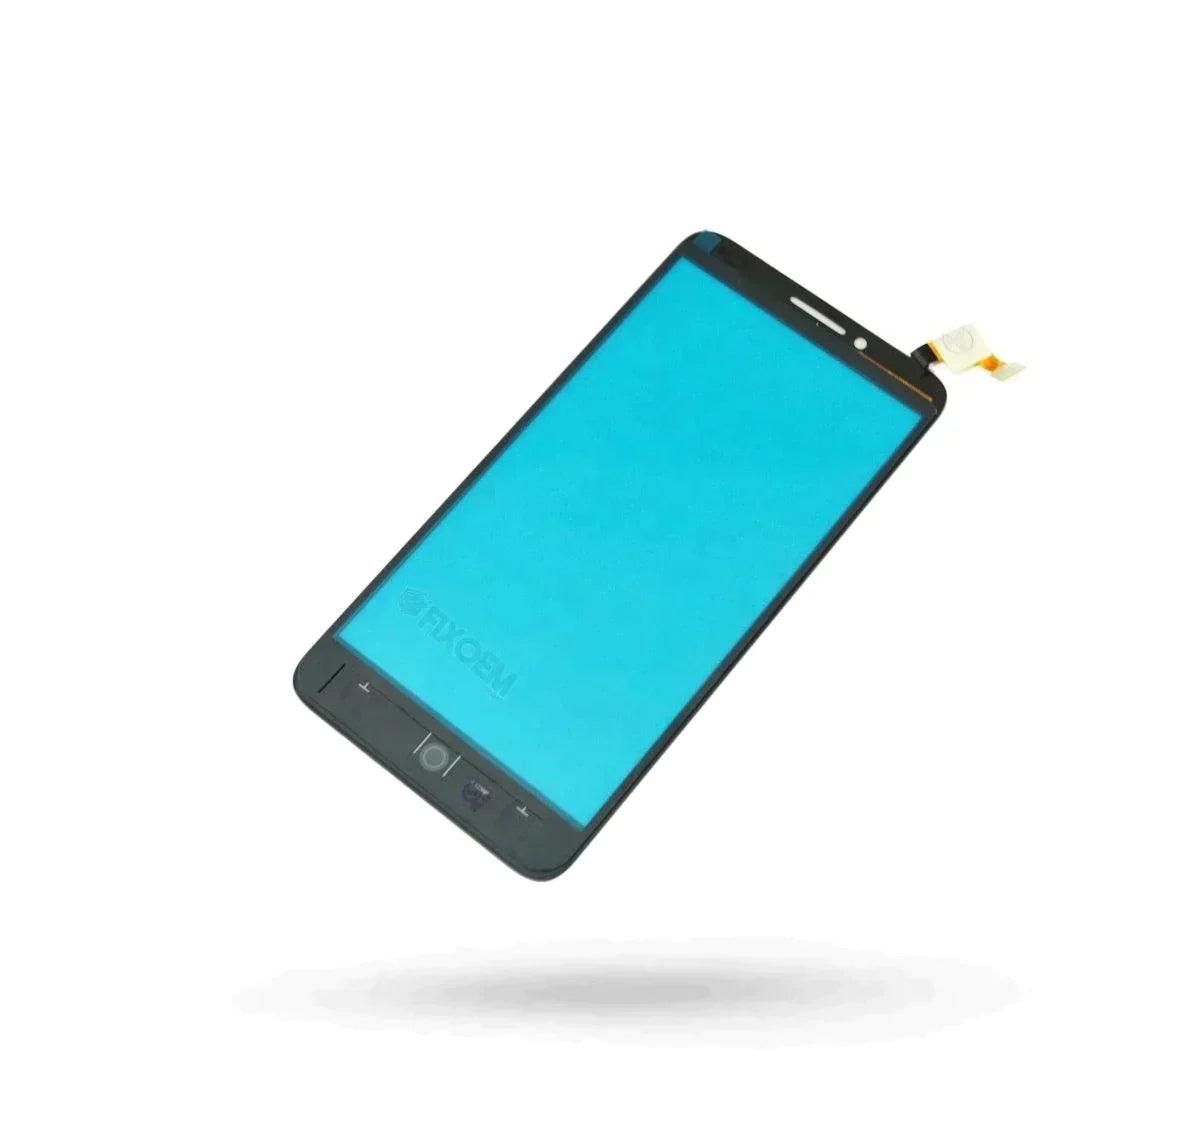 Touch Alcatel Pop 3 5054S a solo $ 110.00 Refaccion y puestos celulares, refurbish y microelectronica.- FixOEM